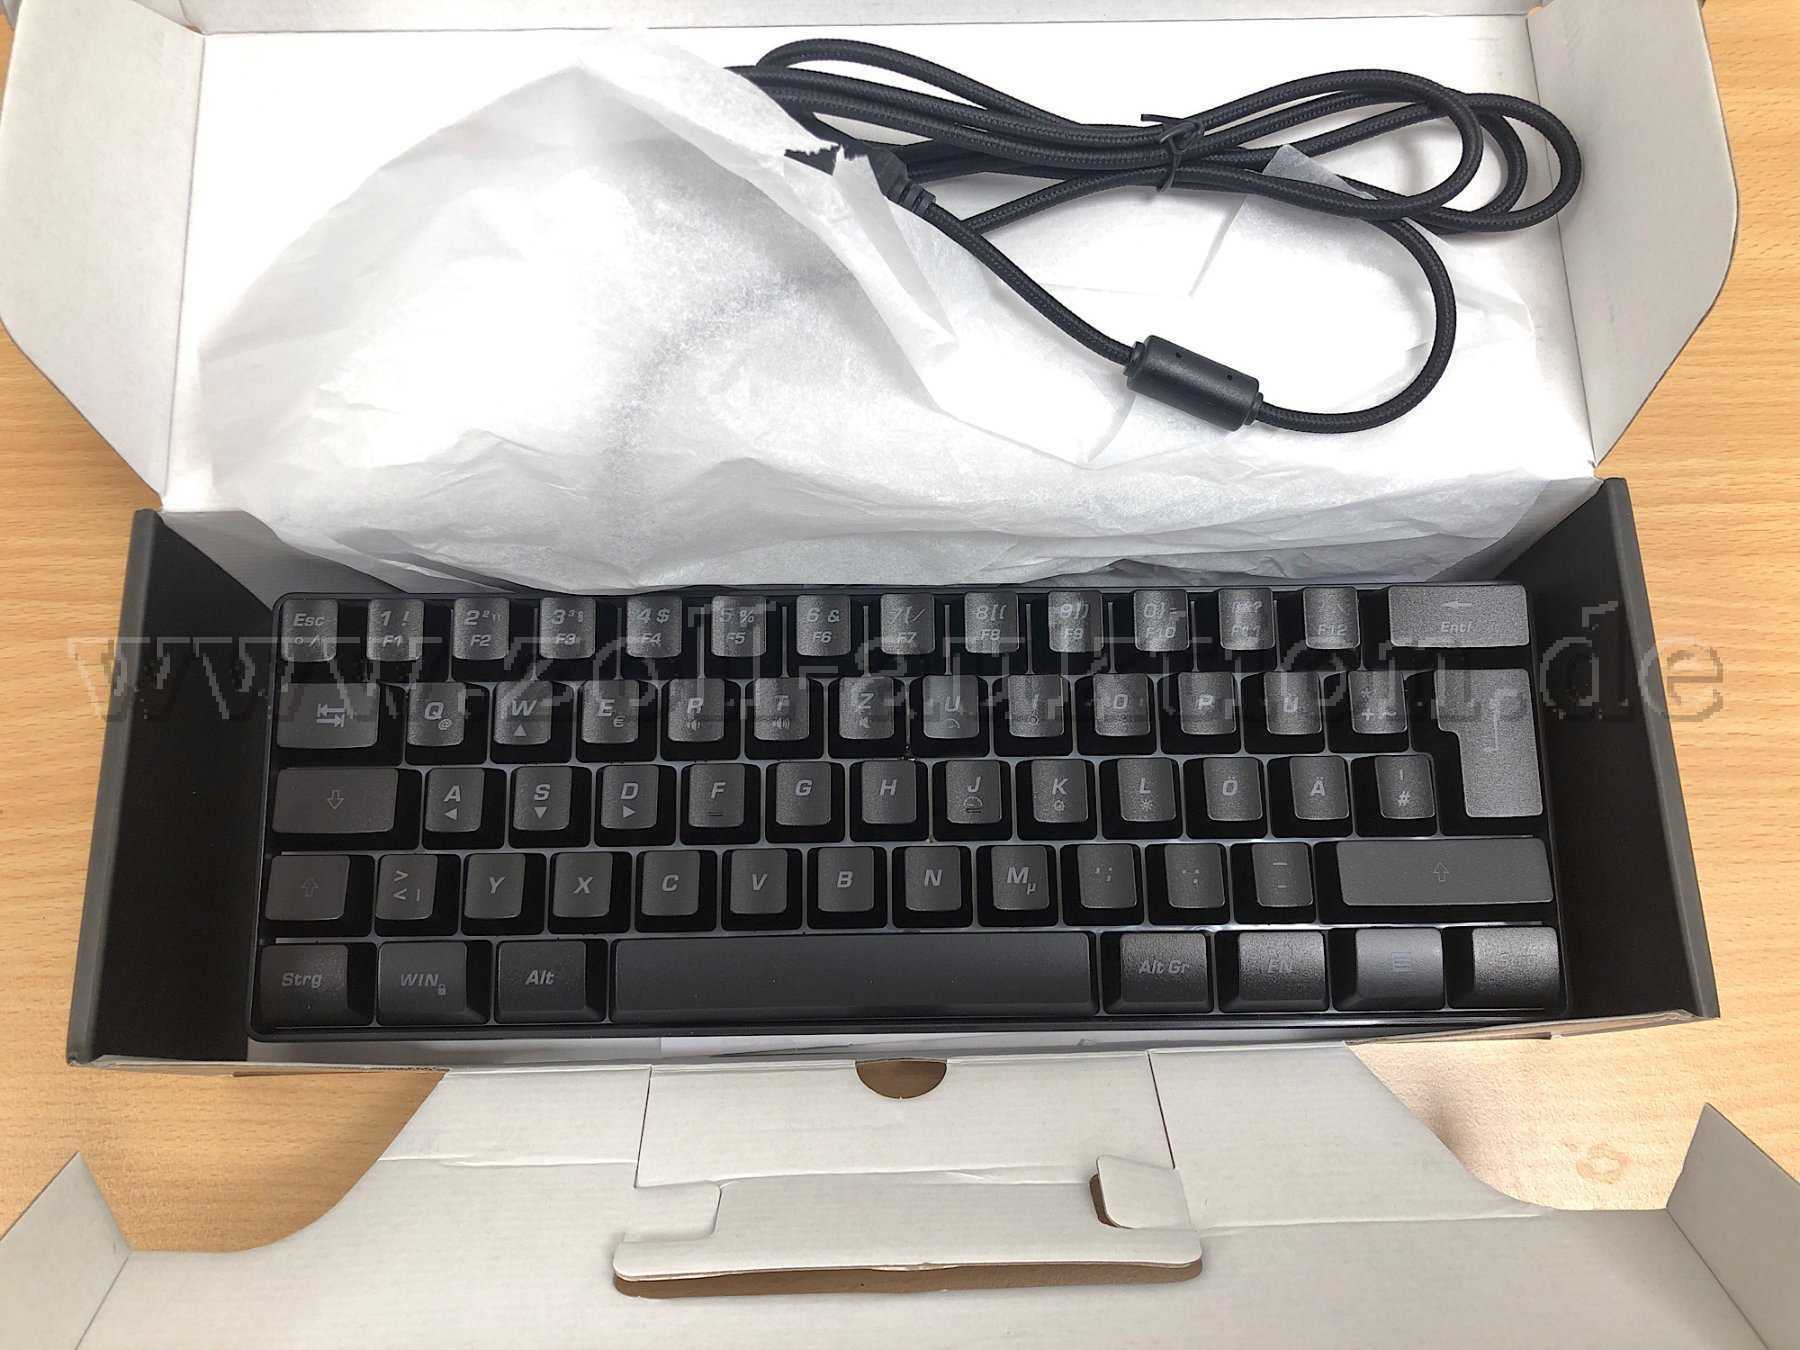 Mini-Gaming-Tastatur von YSI, multicolor-LED (kein Farbwechsel, kein Ein- und Ausschalten möglich) - nicht im Bild: LED-Funktion